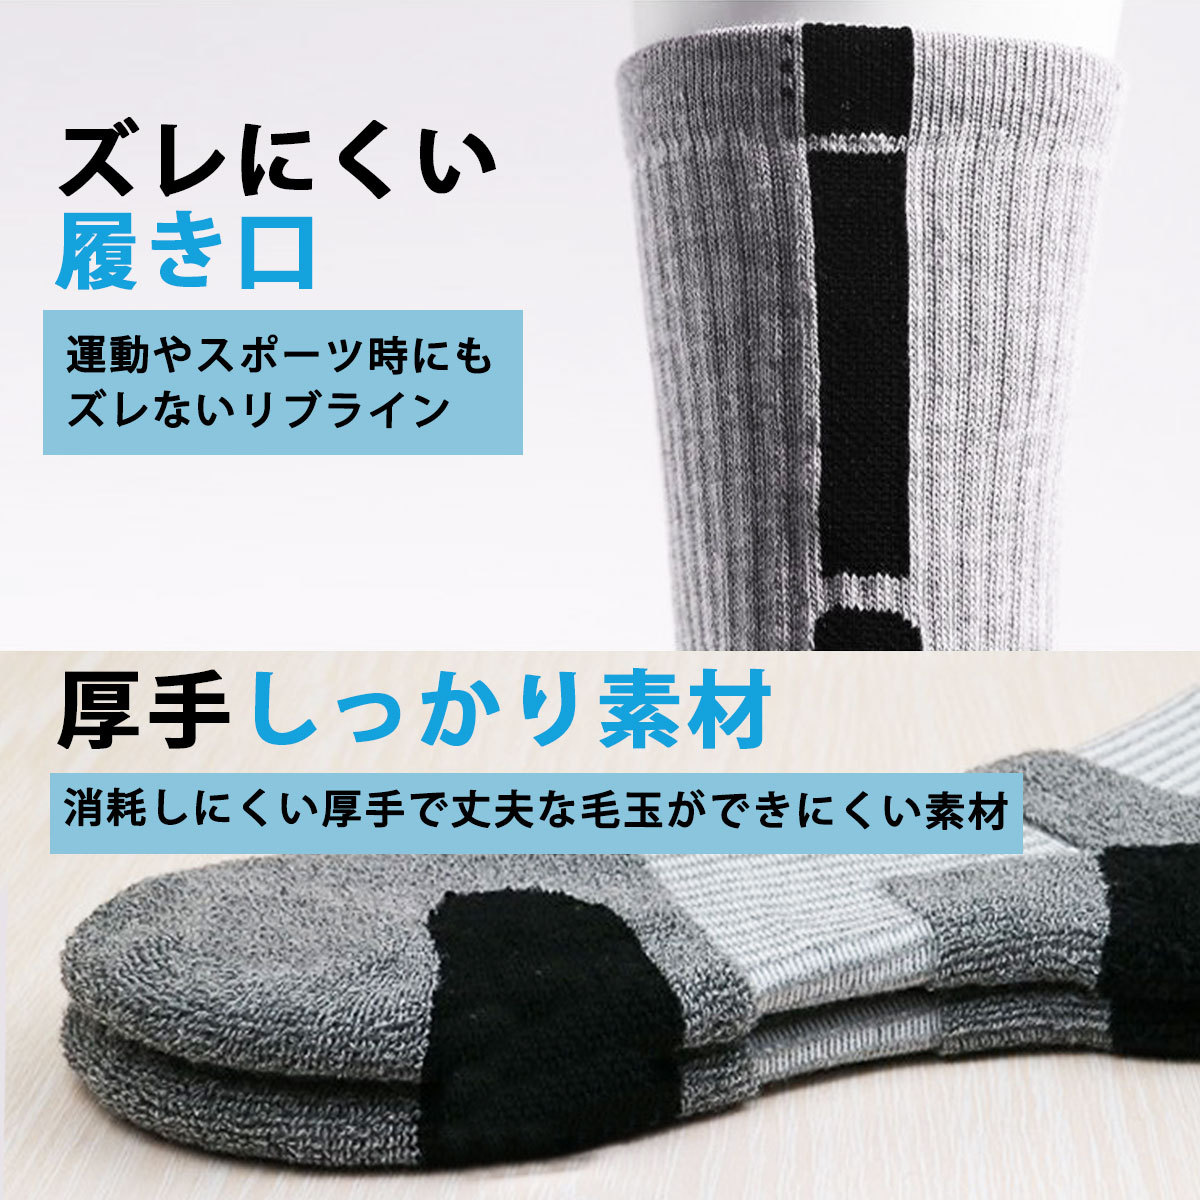  спорт носки 3 пар комплект мужской носки носки спорт Golf средний плотная ткань модный подарок подарок 